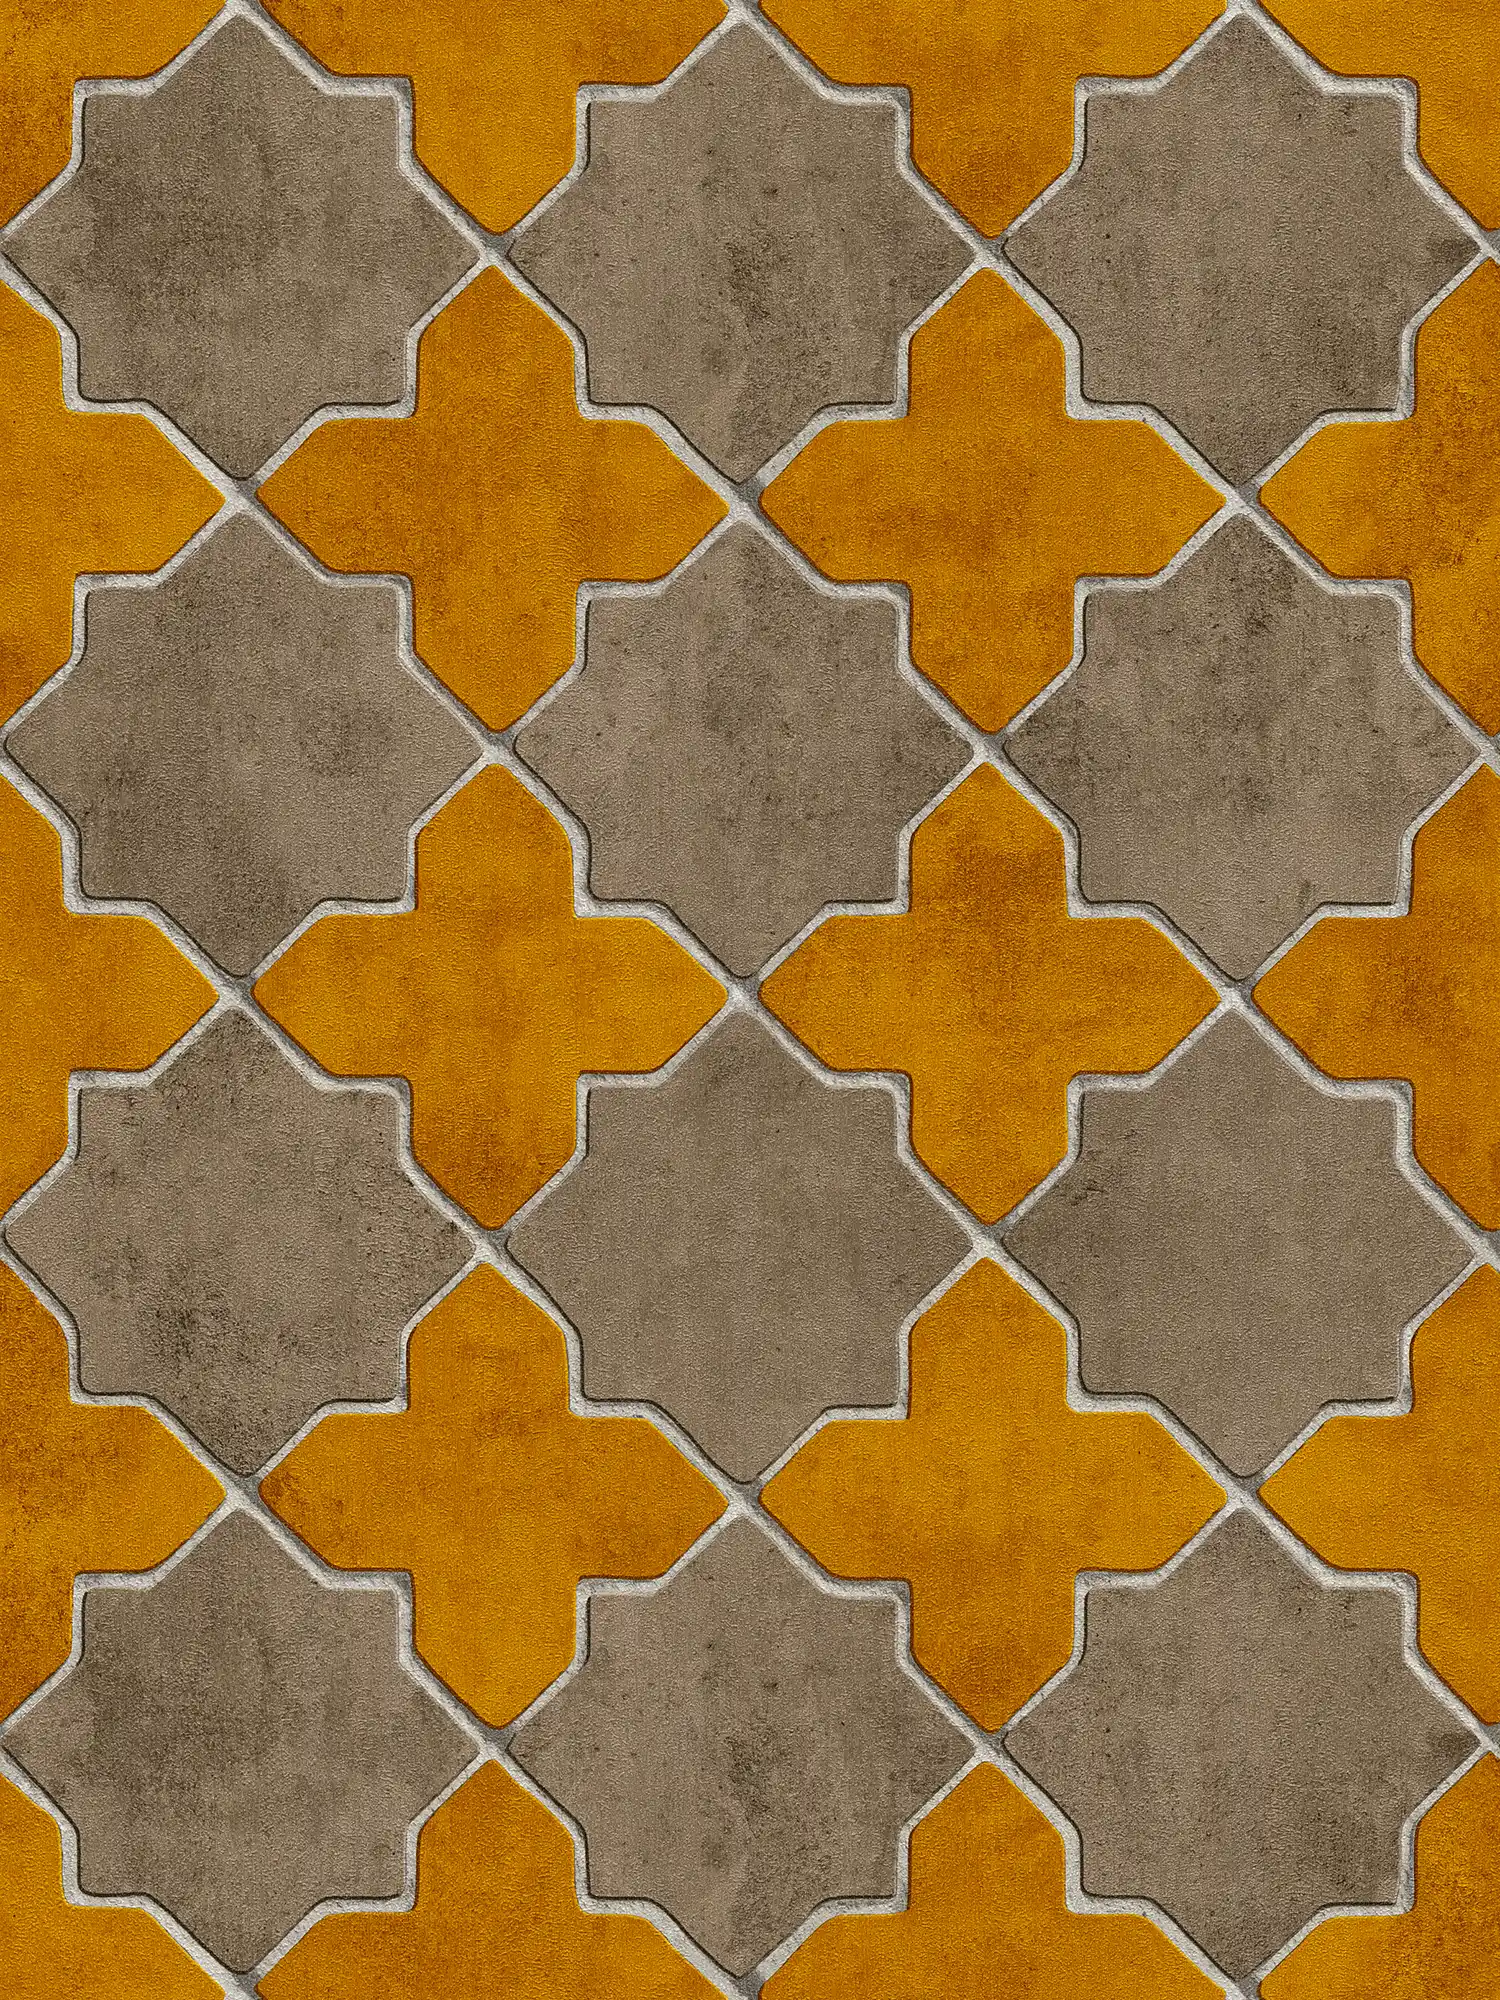         Fliesen-Optik Tapete marokkanisch – Gelb, Beige, Creme
    